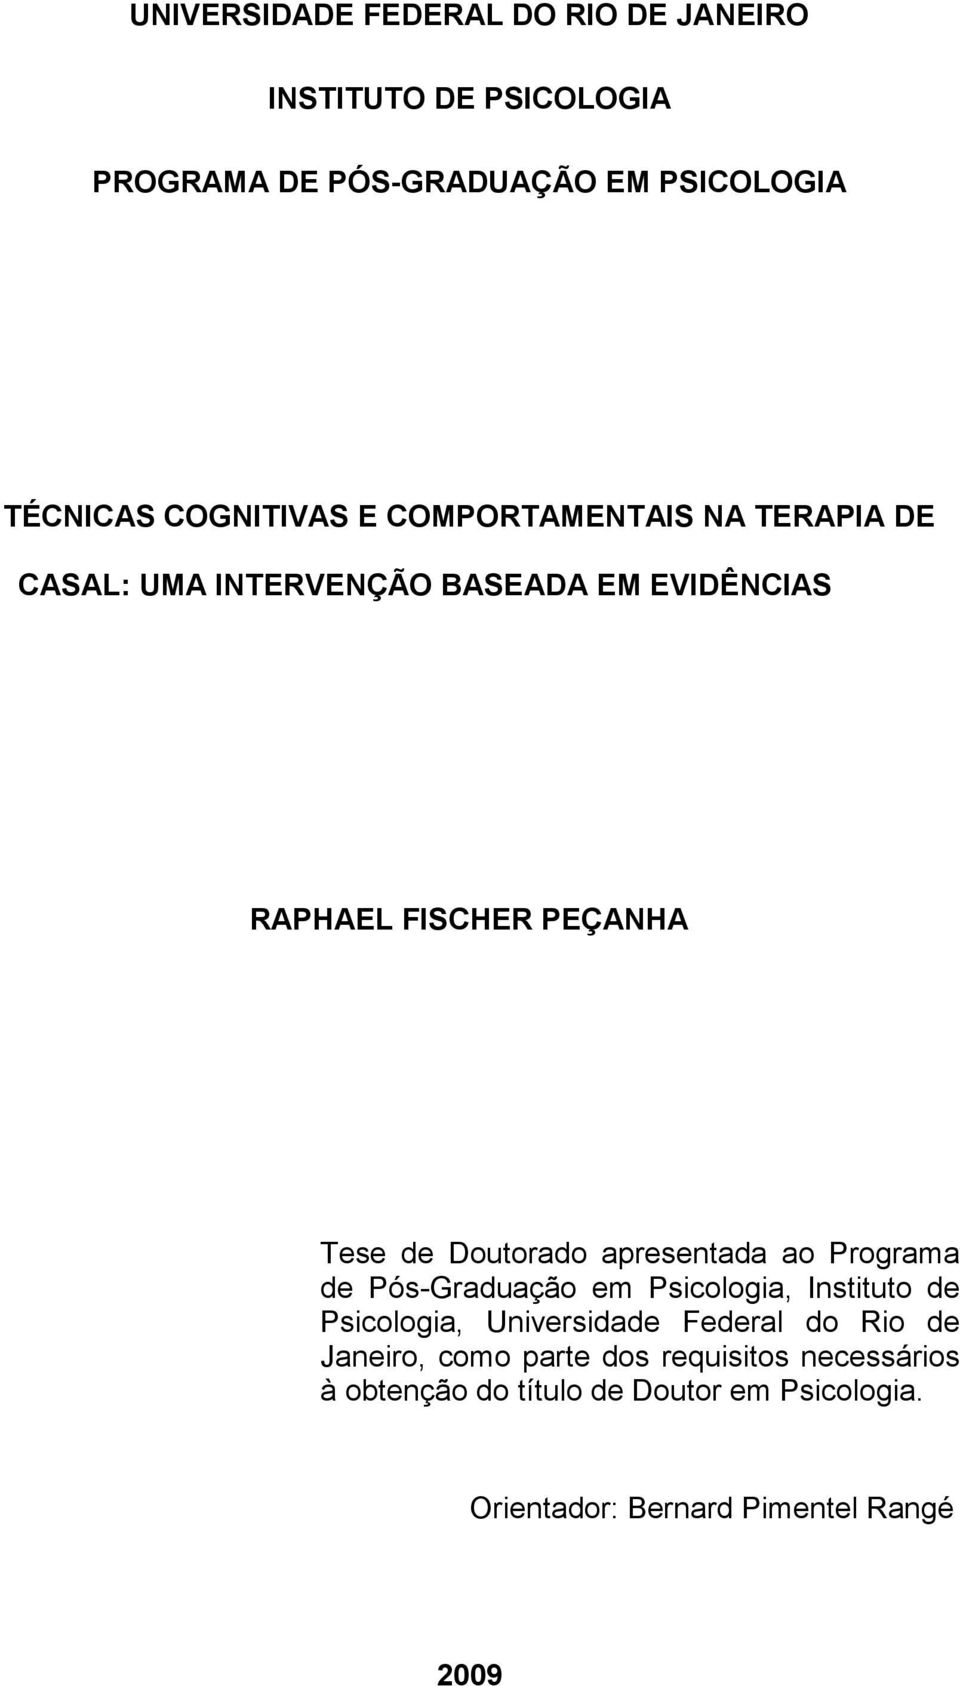 Doutorado apresentada ao Programa de Pós-Graduação em Psicologia, Instituto de Psicologia, Universidade Federal do Rio de